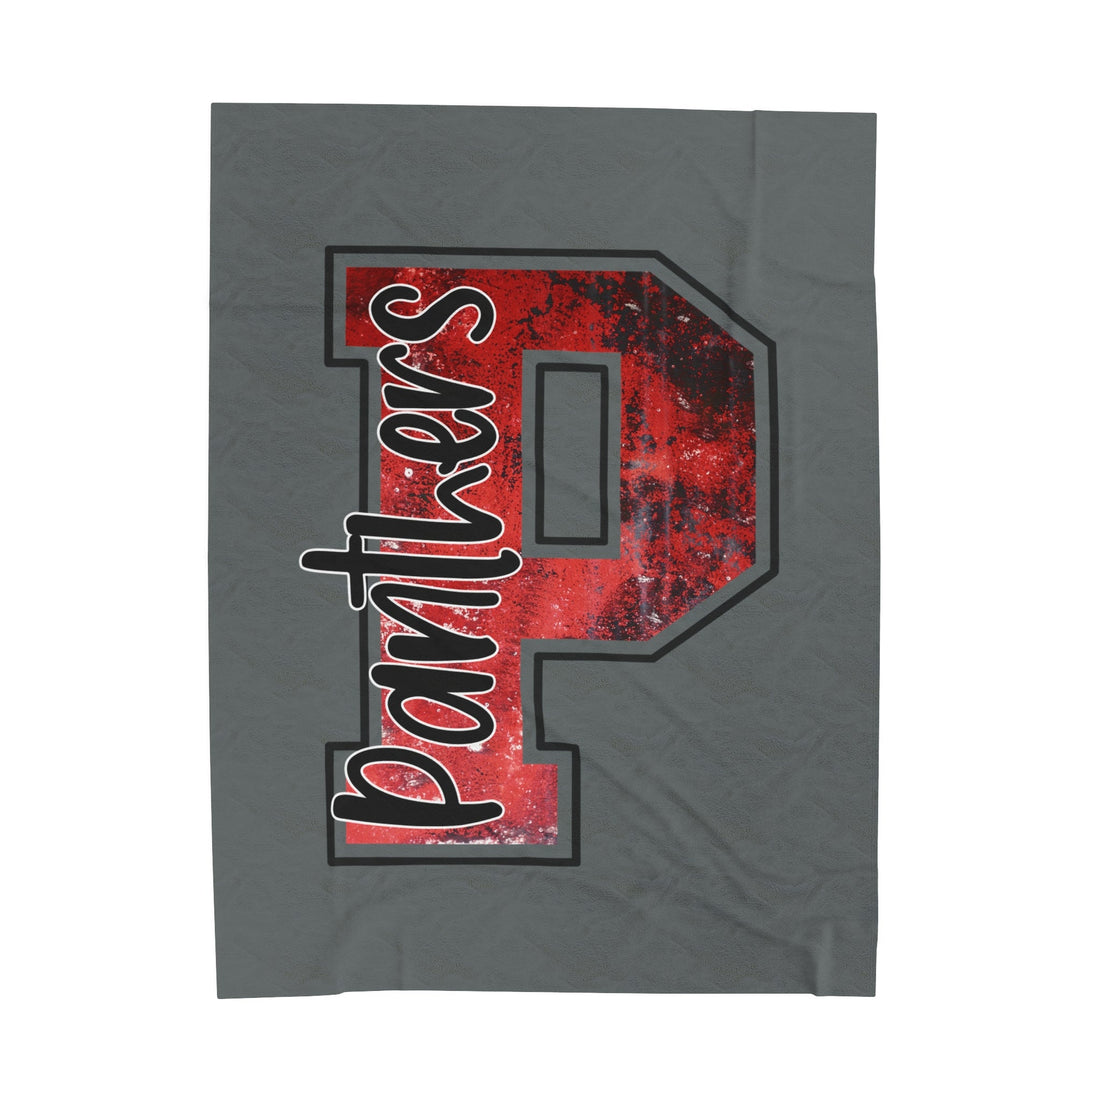 P for Panthers Velveteen Plush Blanket - All Over Prints - Positively Sassy - P for Panthers Velveteen Plush Blanket